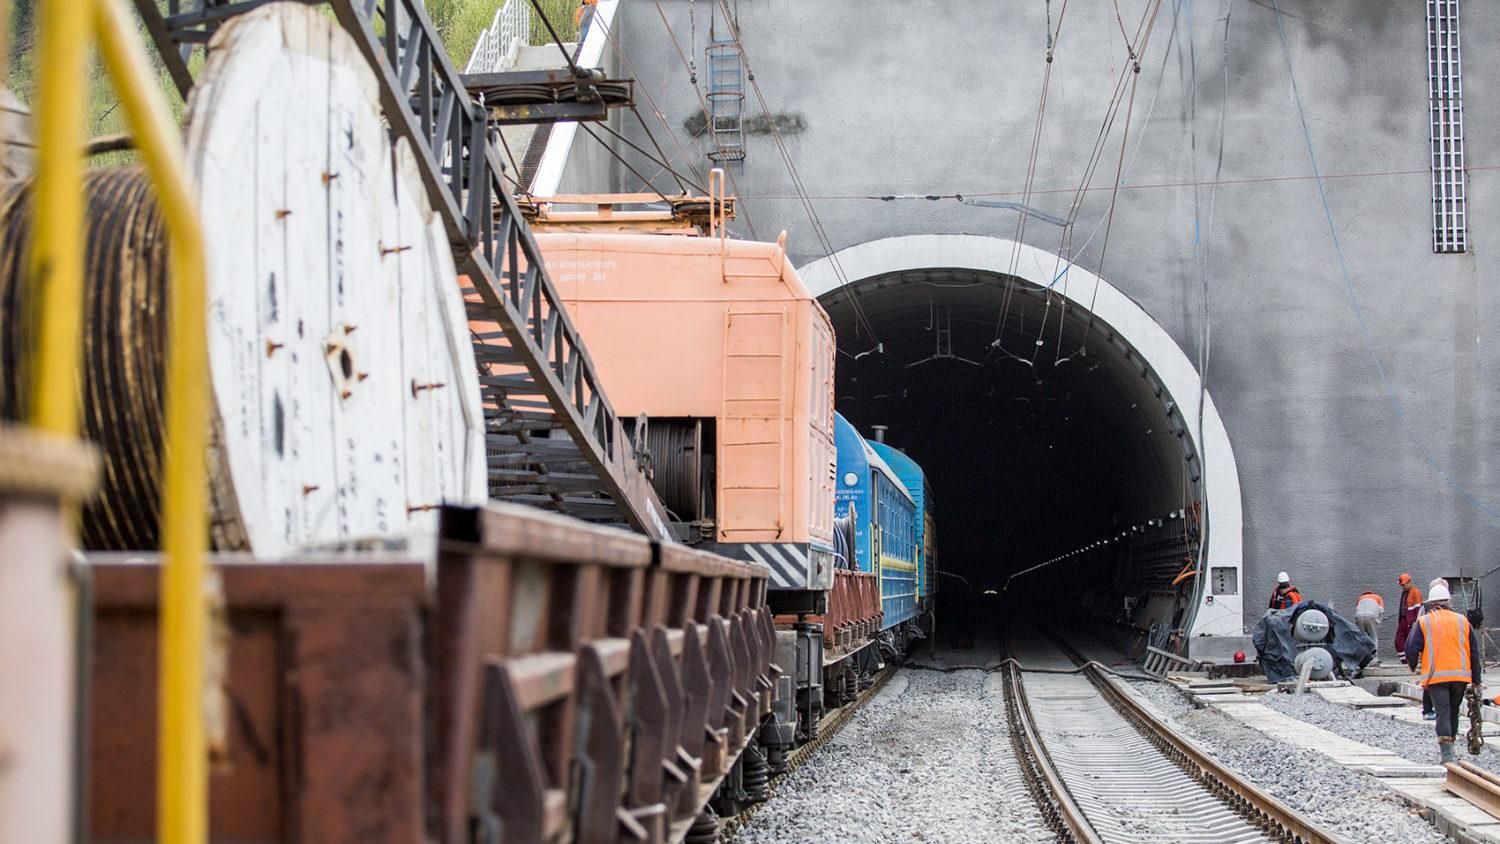 Бескидський тунель відкрили 24 травня в Карпатах: відео та фото